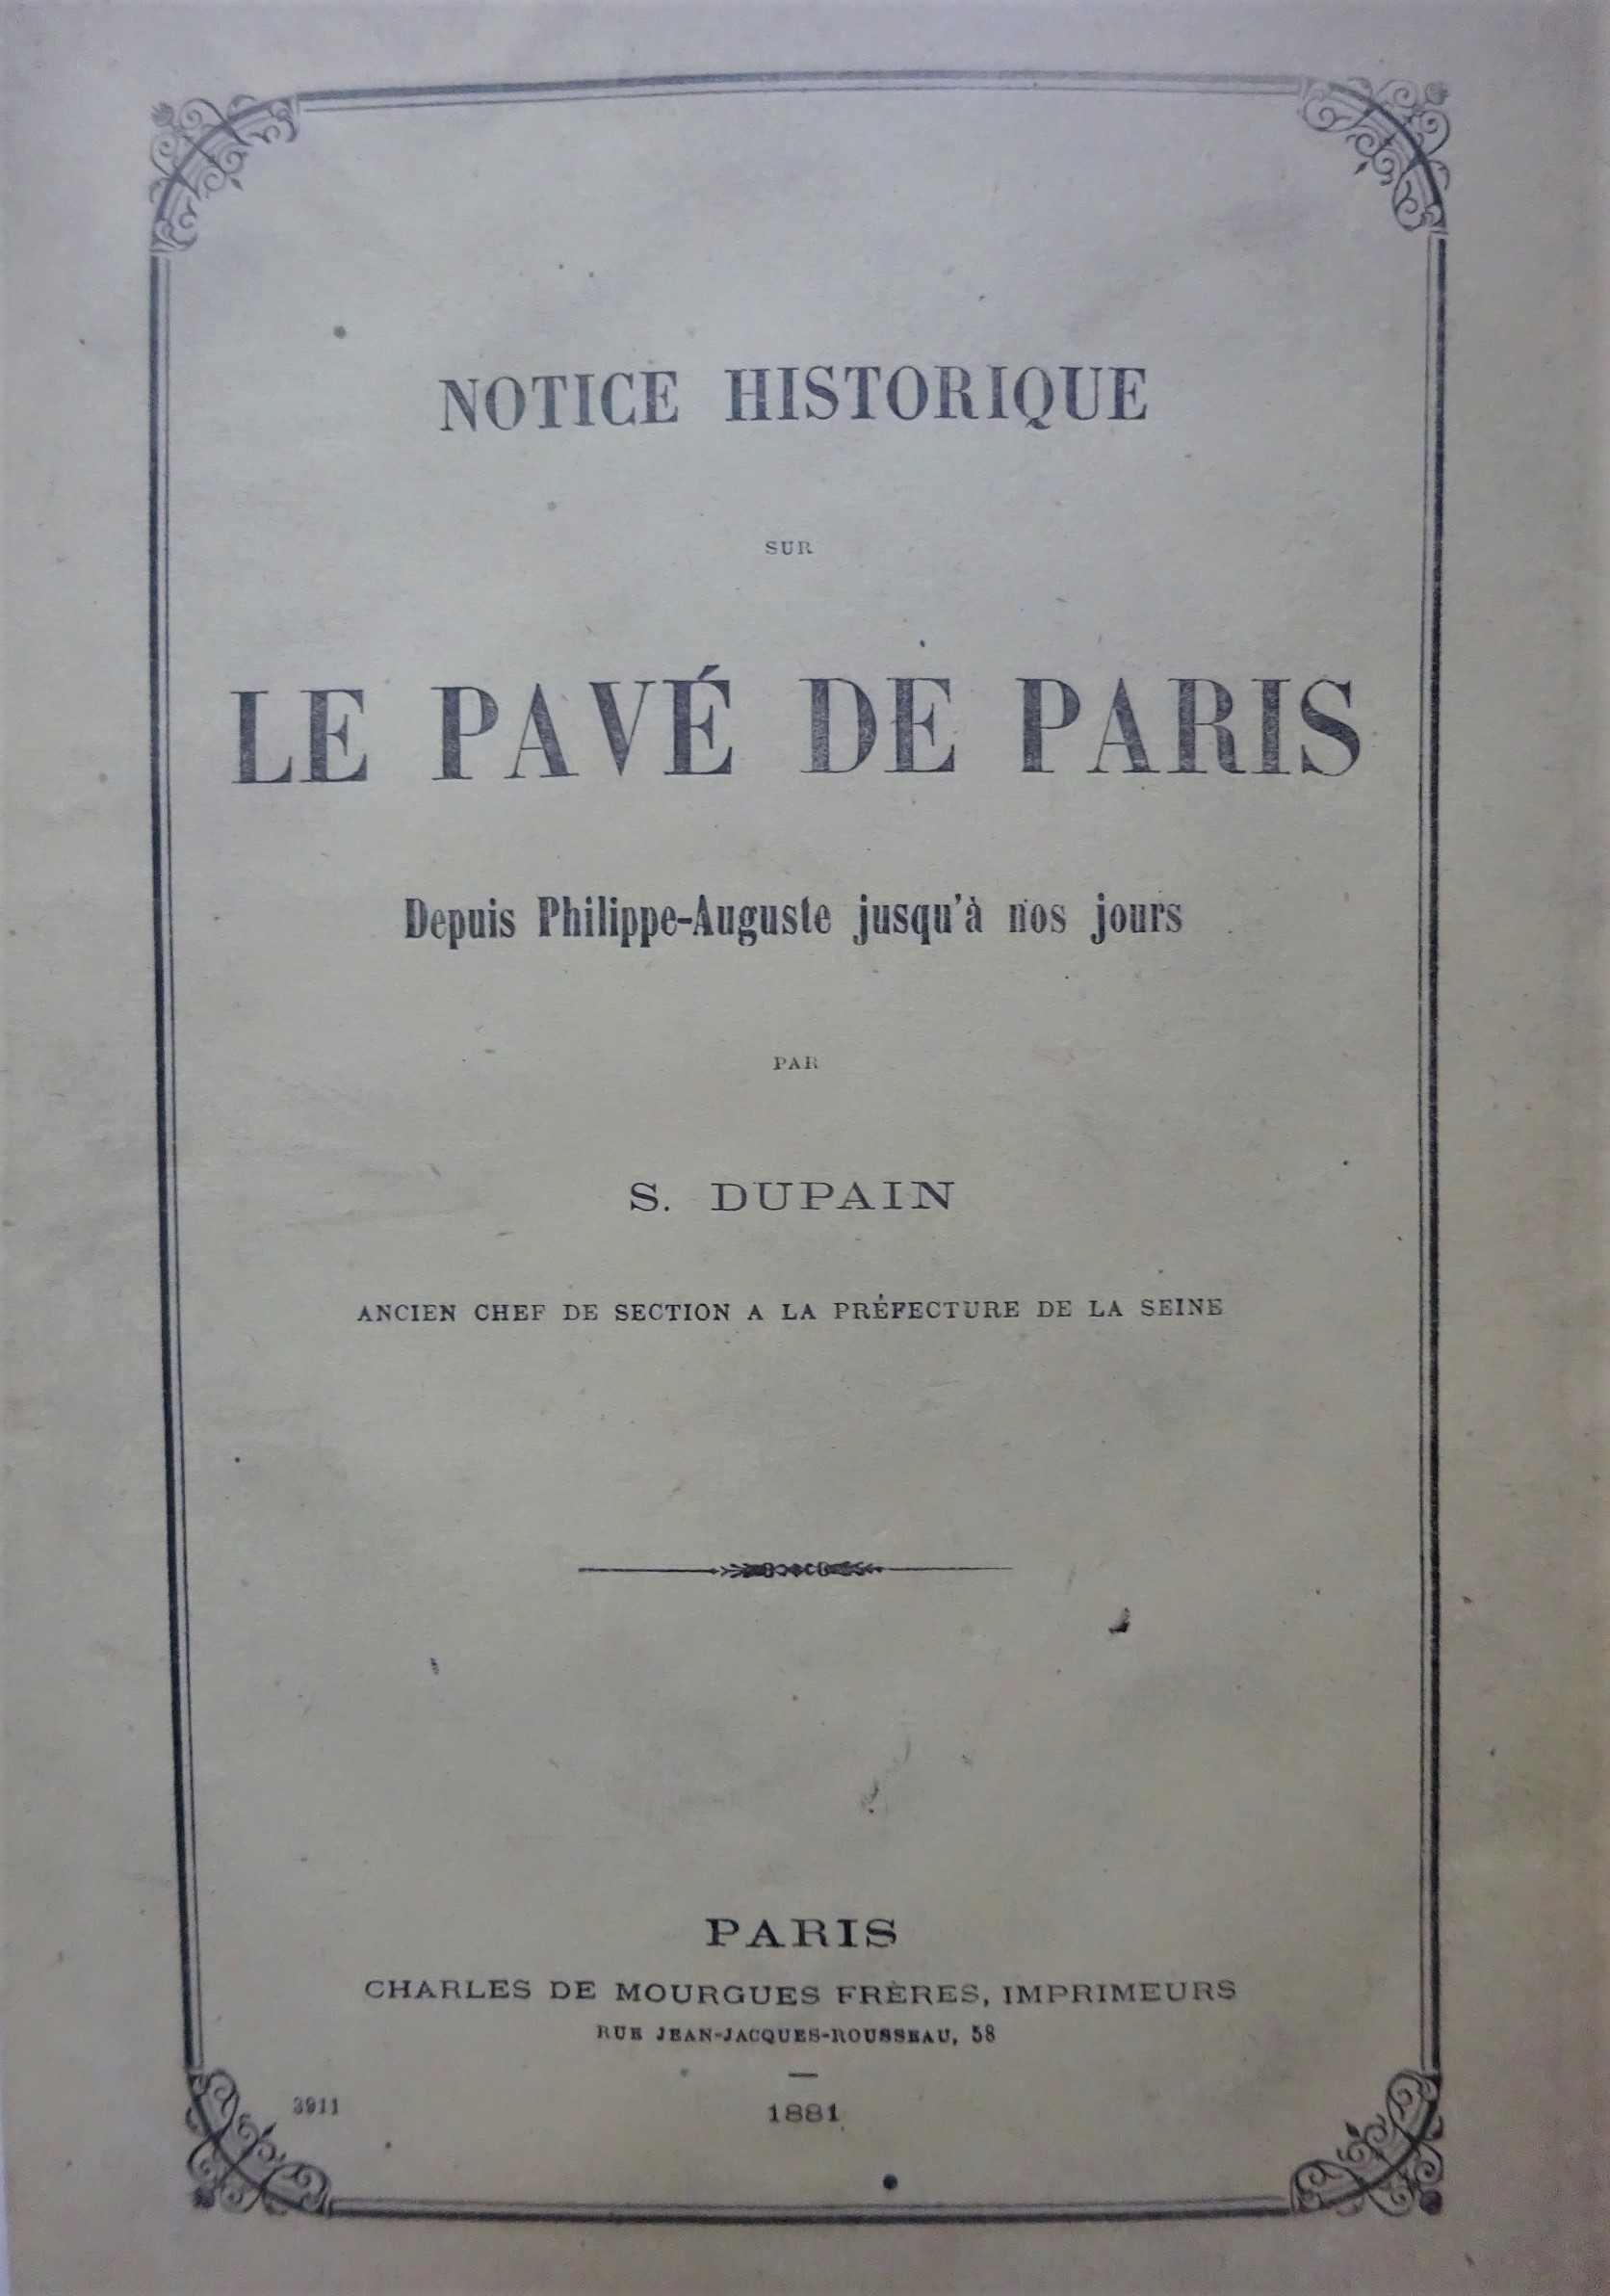 Notice historique sur le pavé de Paris depuis Philippe-Auguste jusqu'à nos jours